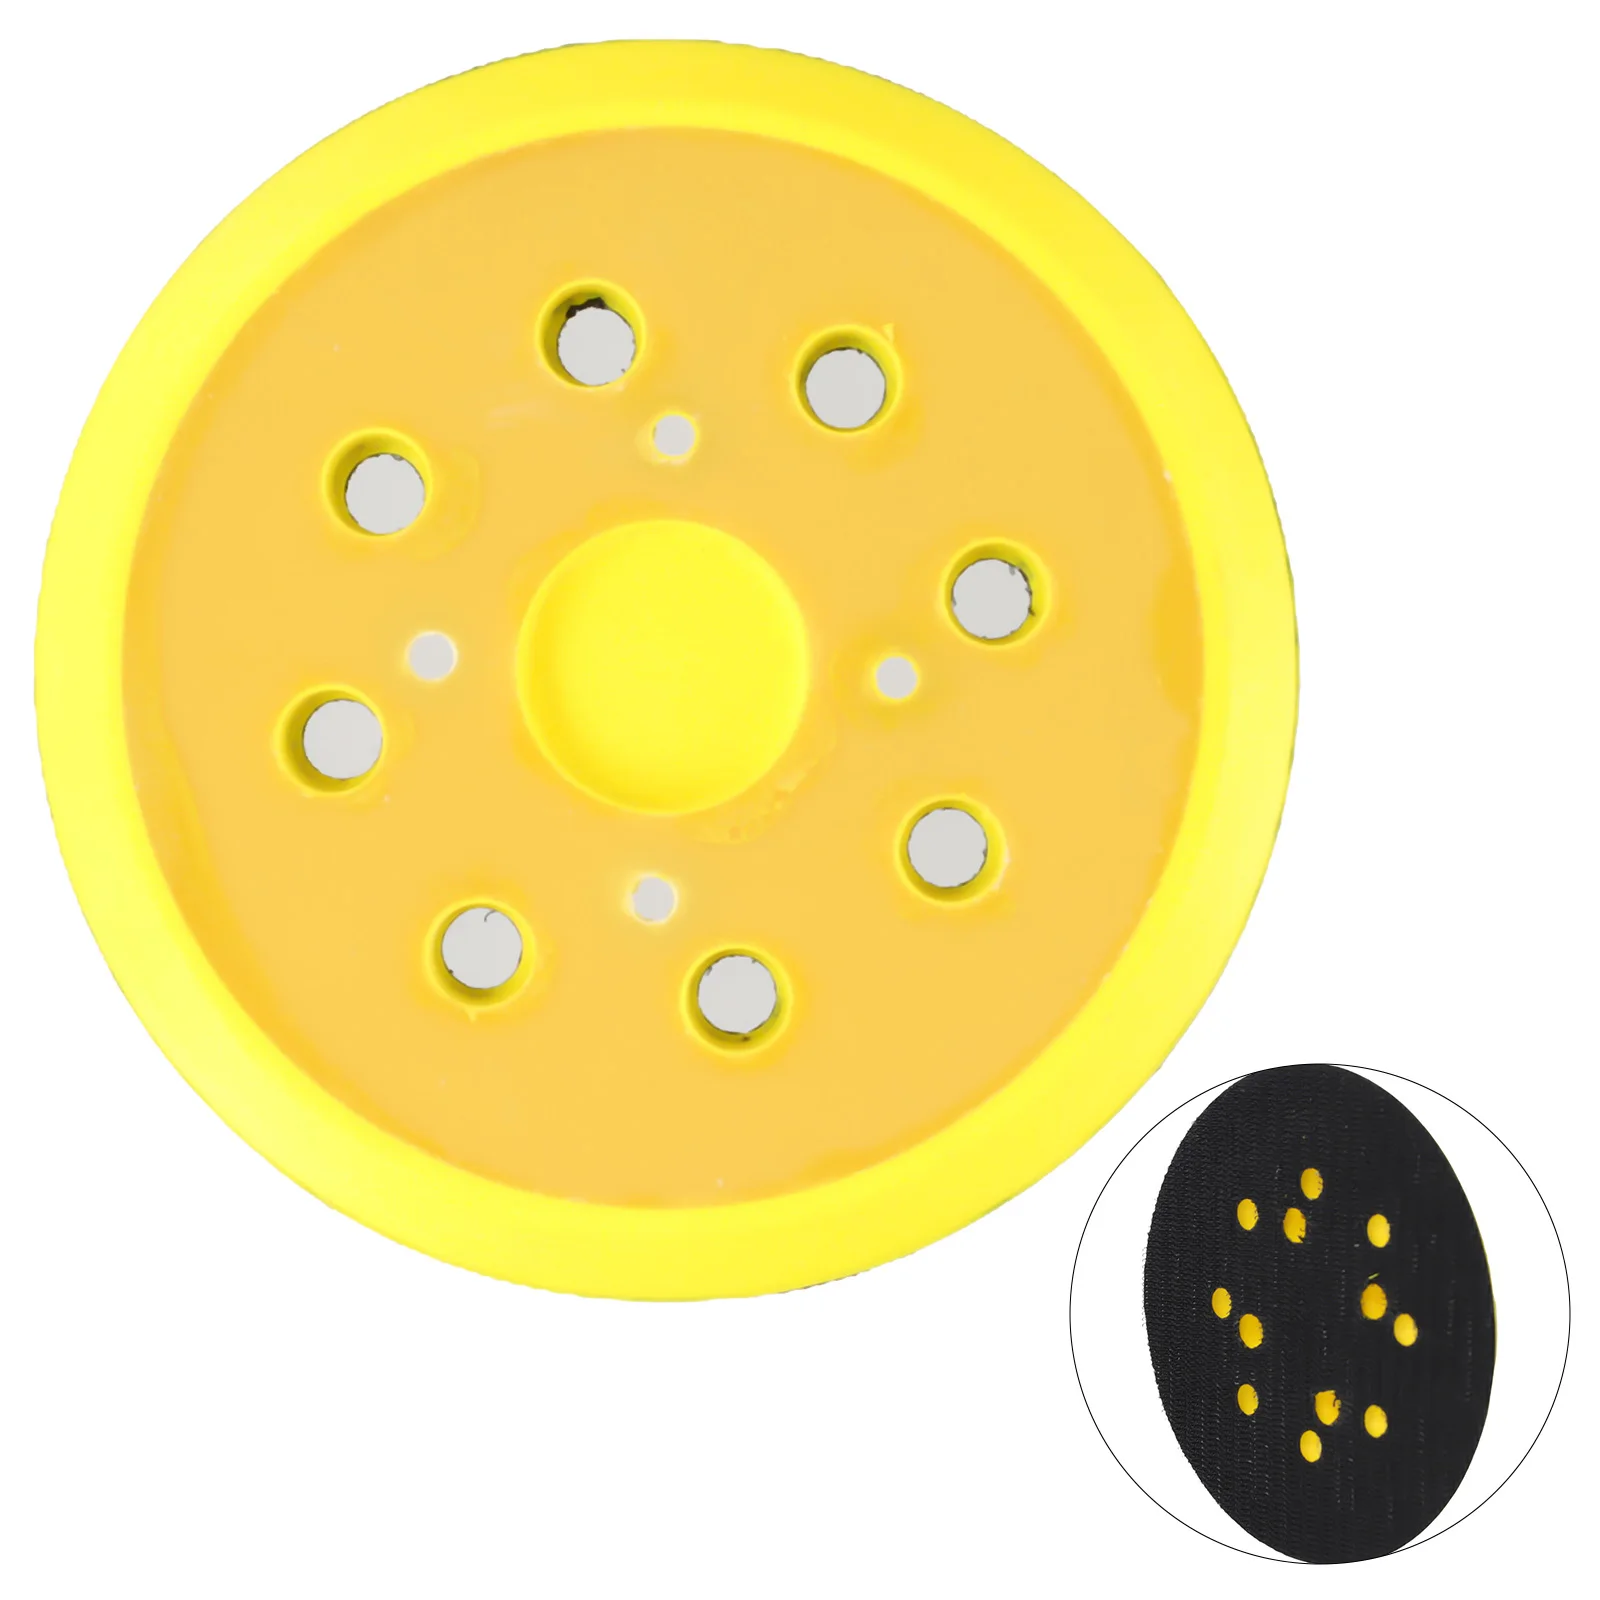 

1 шт., 5 "шлифовальный круг, 8 отверстий, флокирующий полировальный диск, кольцевой шлифовальный круг, случайный орбитальный шлифовальный круг для полировки металла и дерева